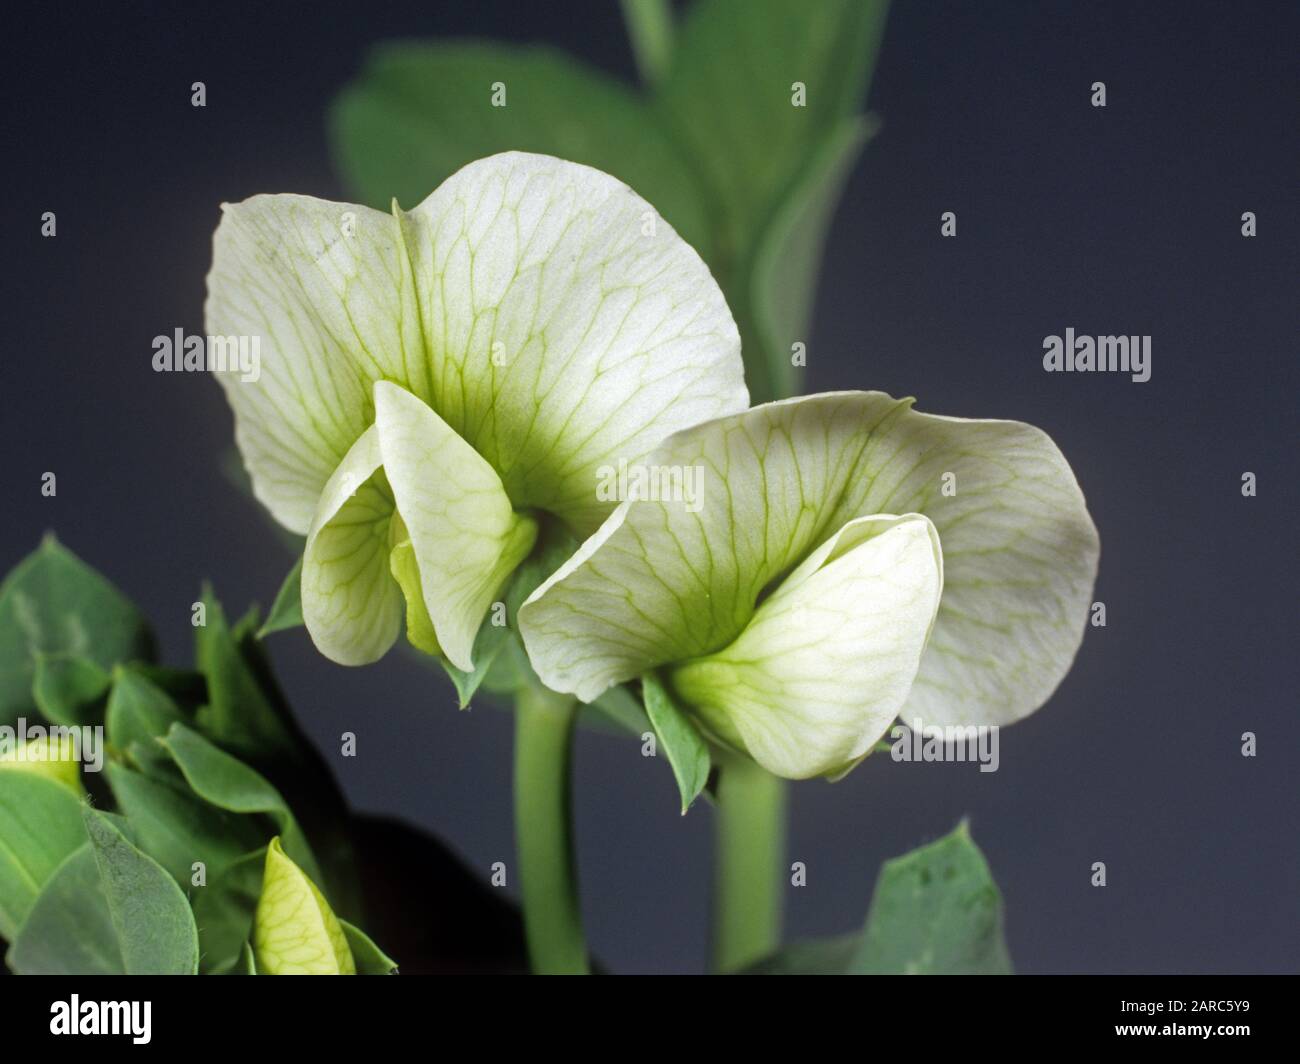 Feuilles et fleurs blanches avec cinq pétales et venation verte d'une plante de culture de pois (Pisum sativum) Banque D'Images